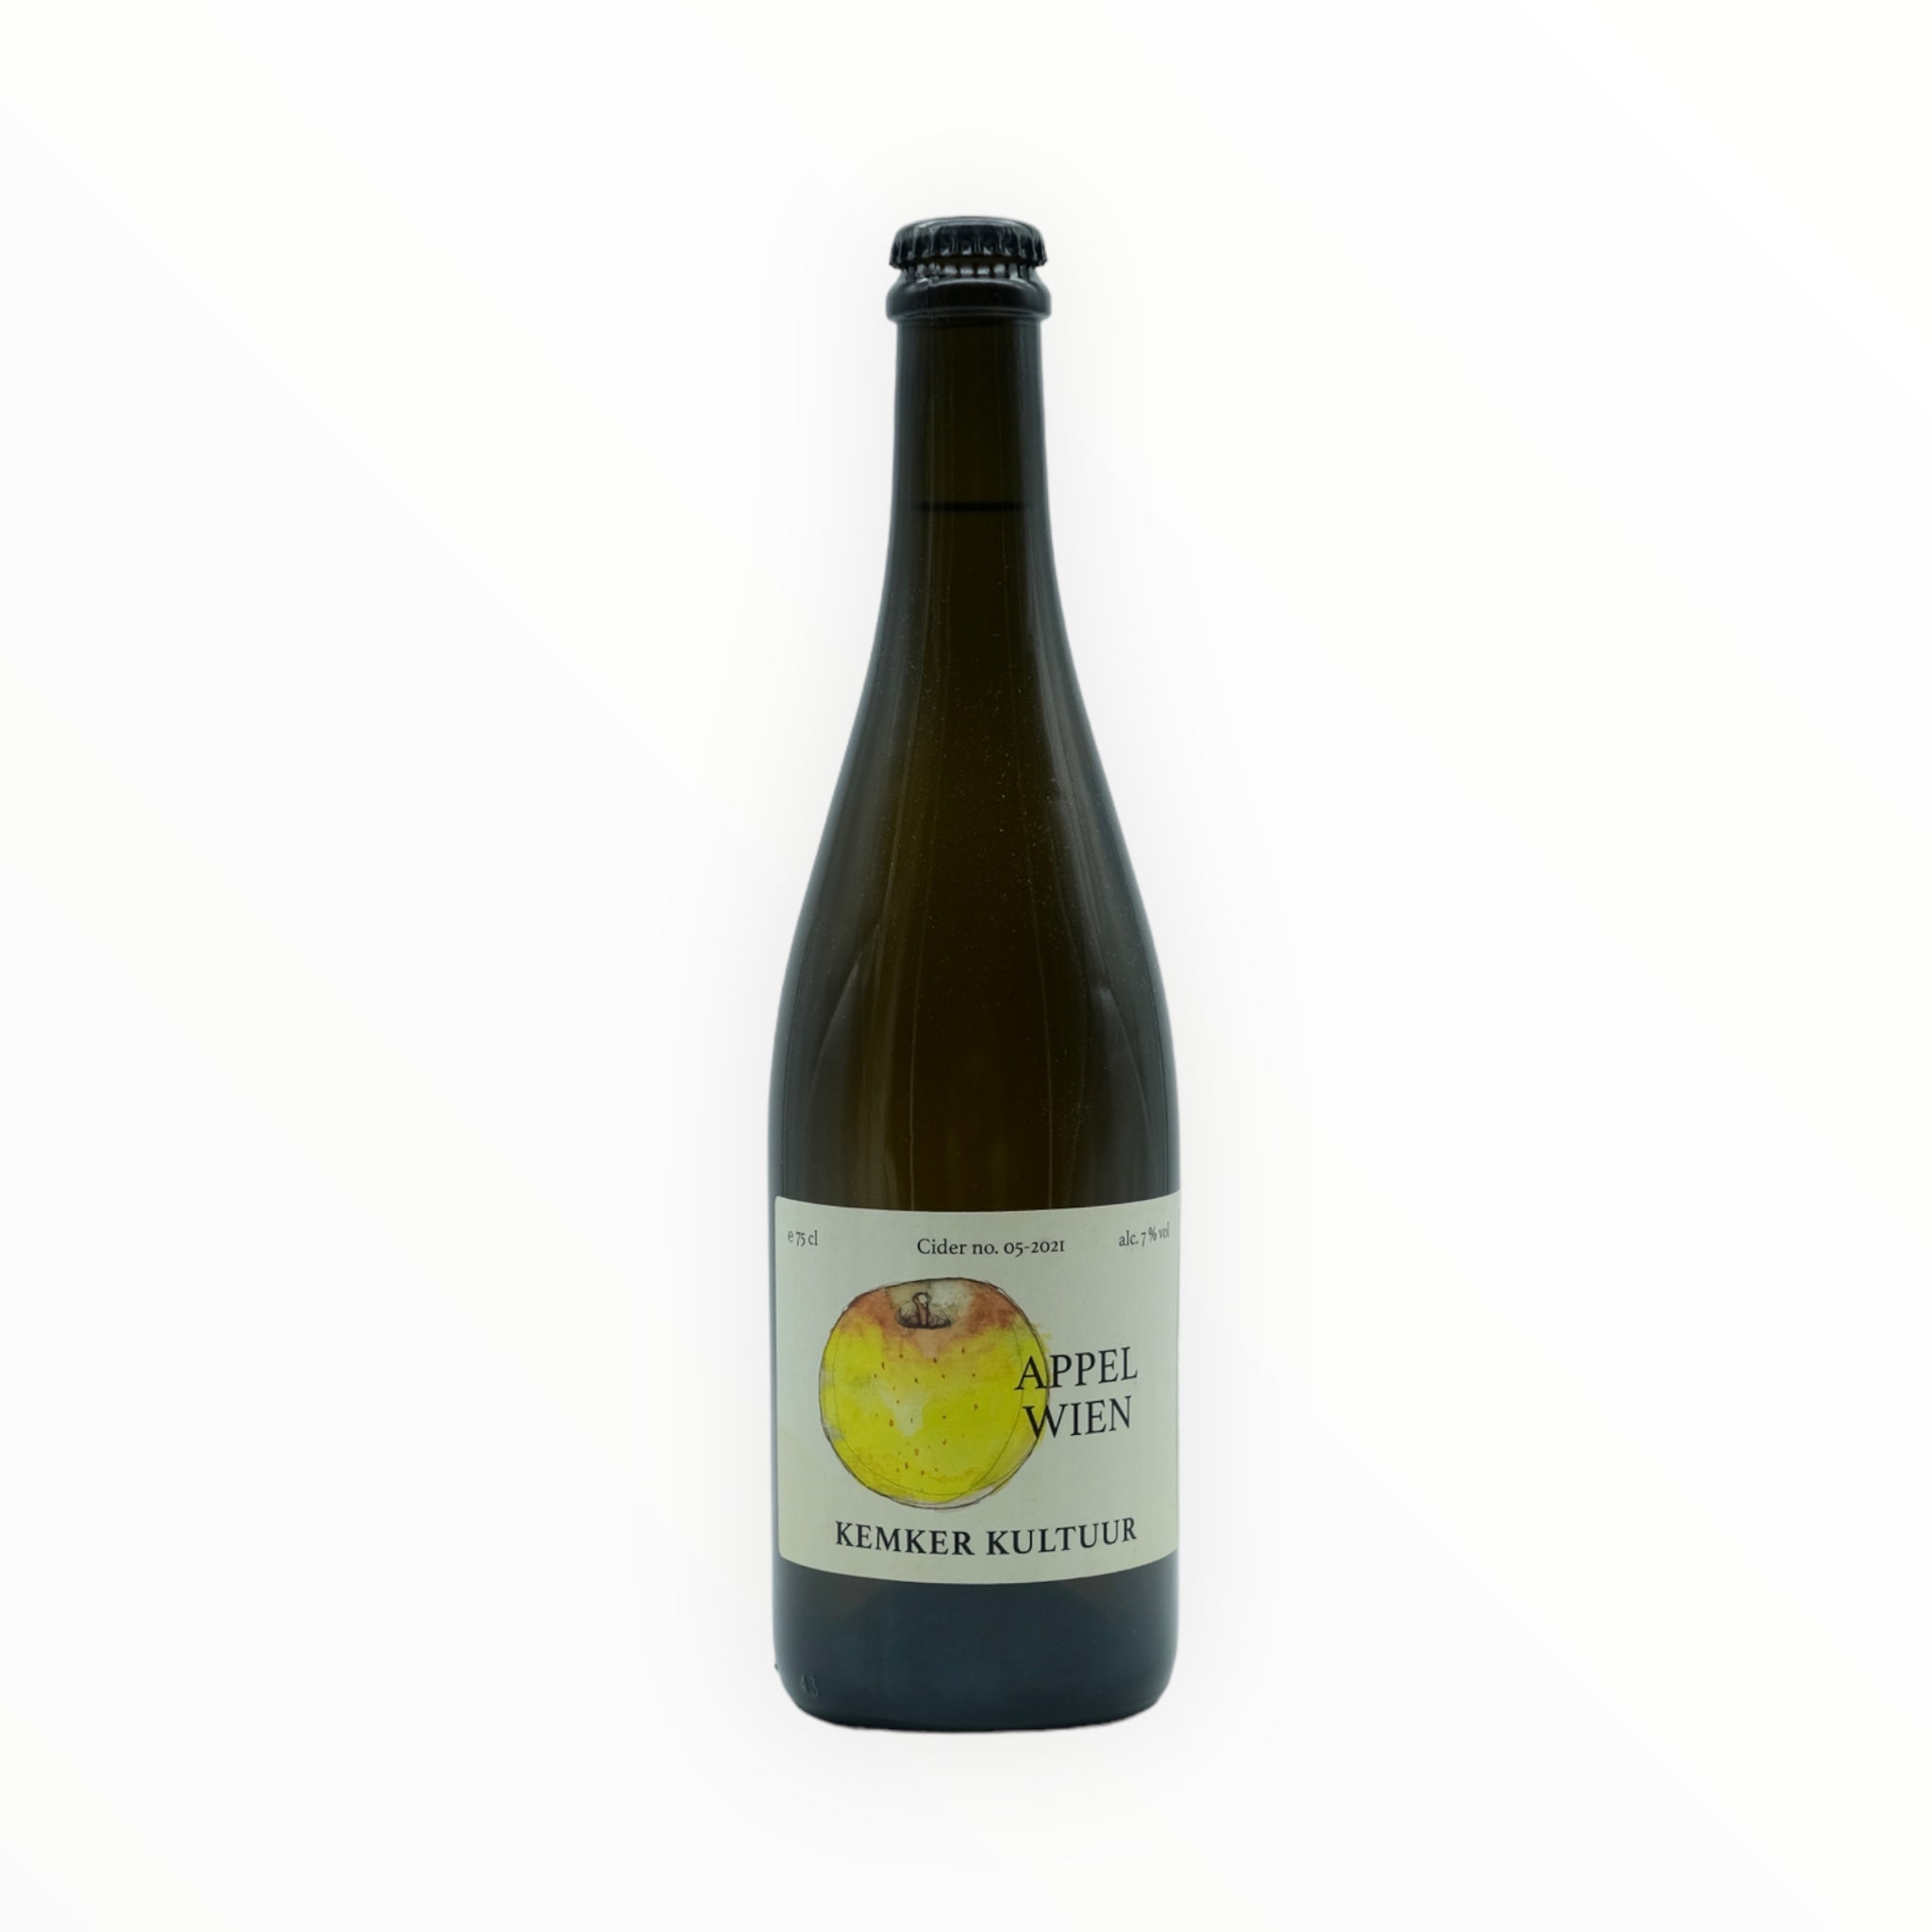 Brewery Kemker - Appelwien Blend no. 05-2021 - Fluid Fruit